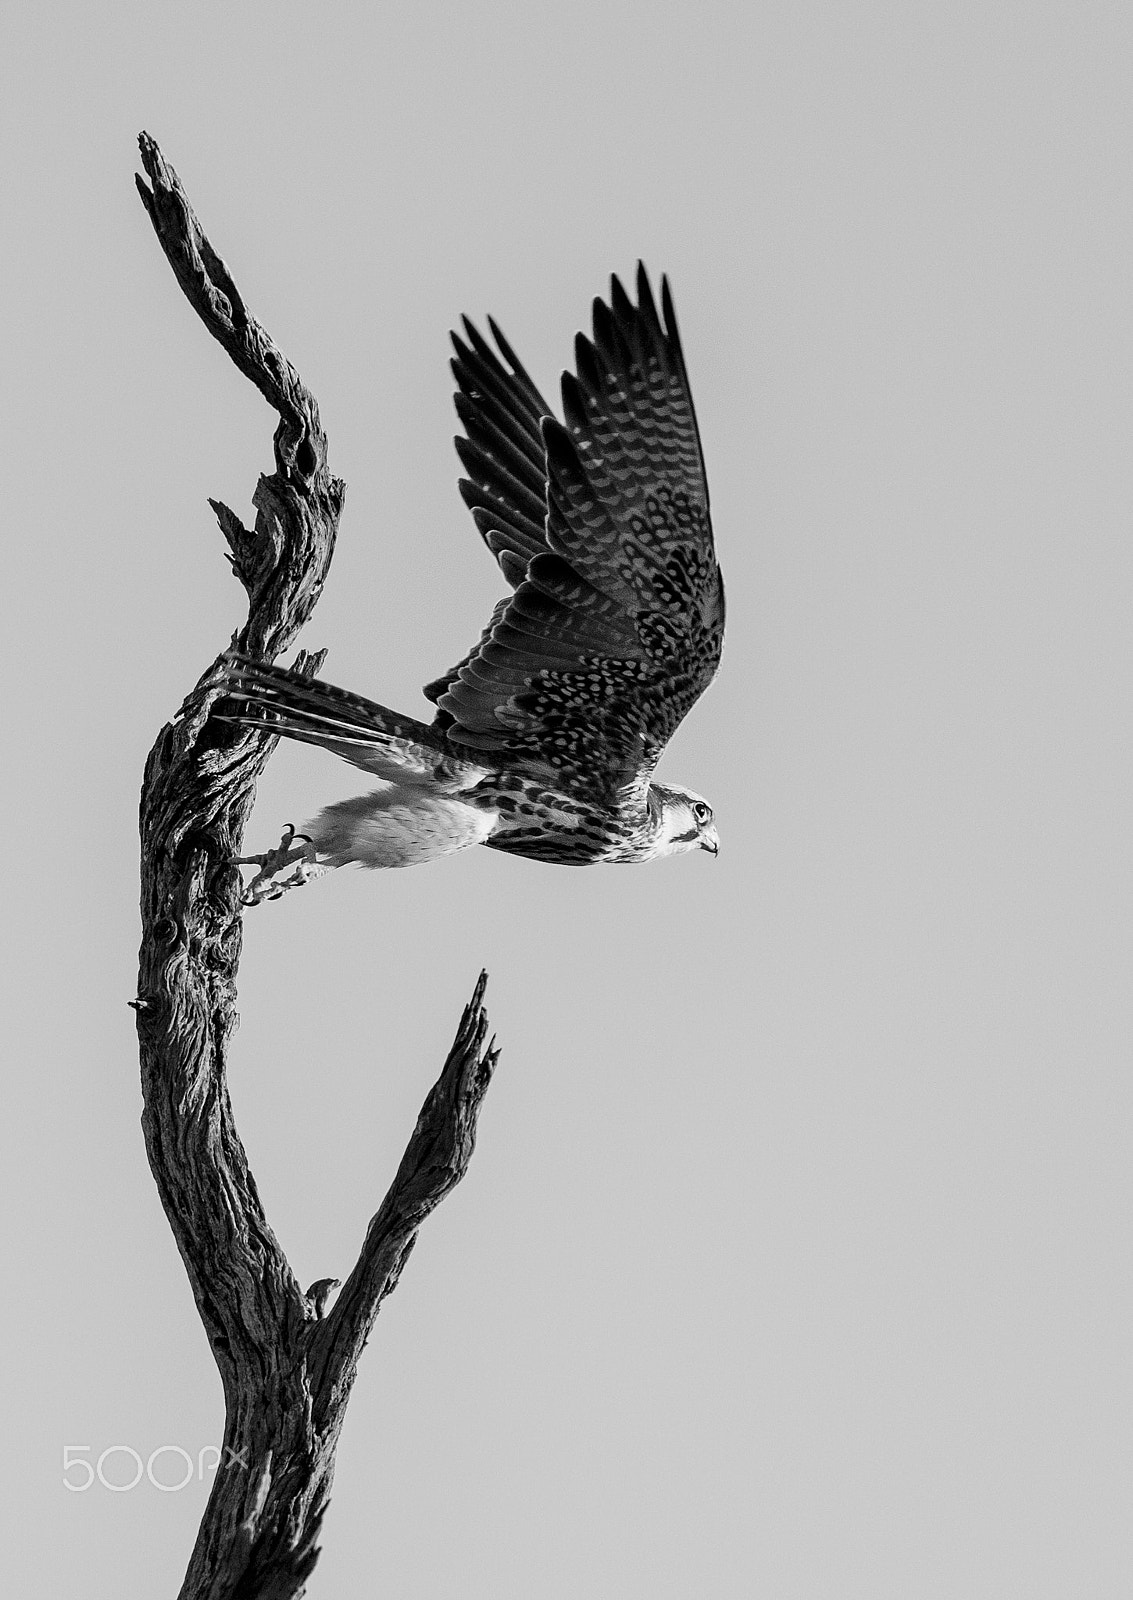 Nikon D4S sample photo. Lanner falcon take off, b&w photography